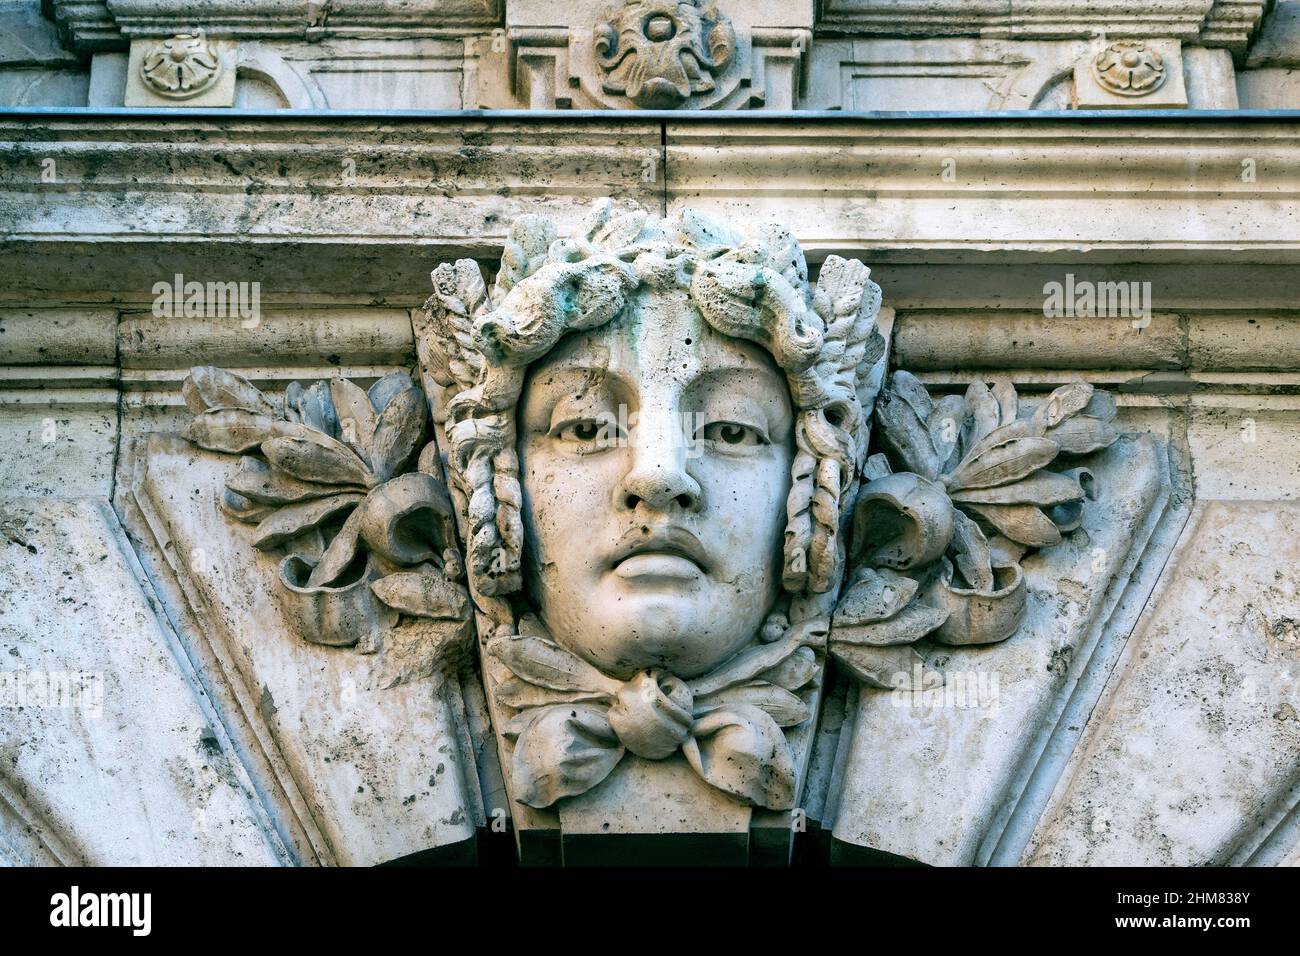 Close-up of a stone human face as decor or Mascaron on building facade Stock Photo